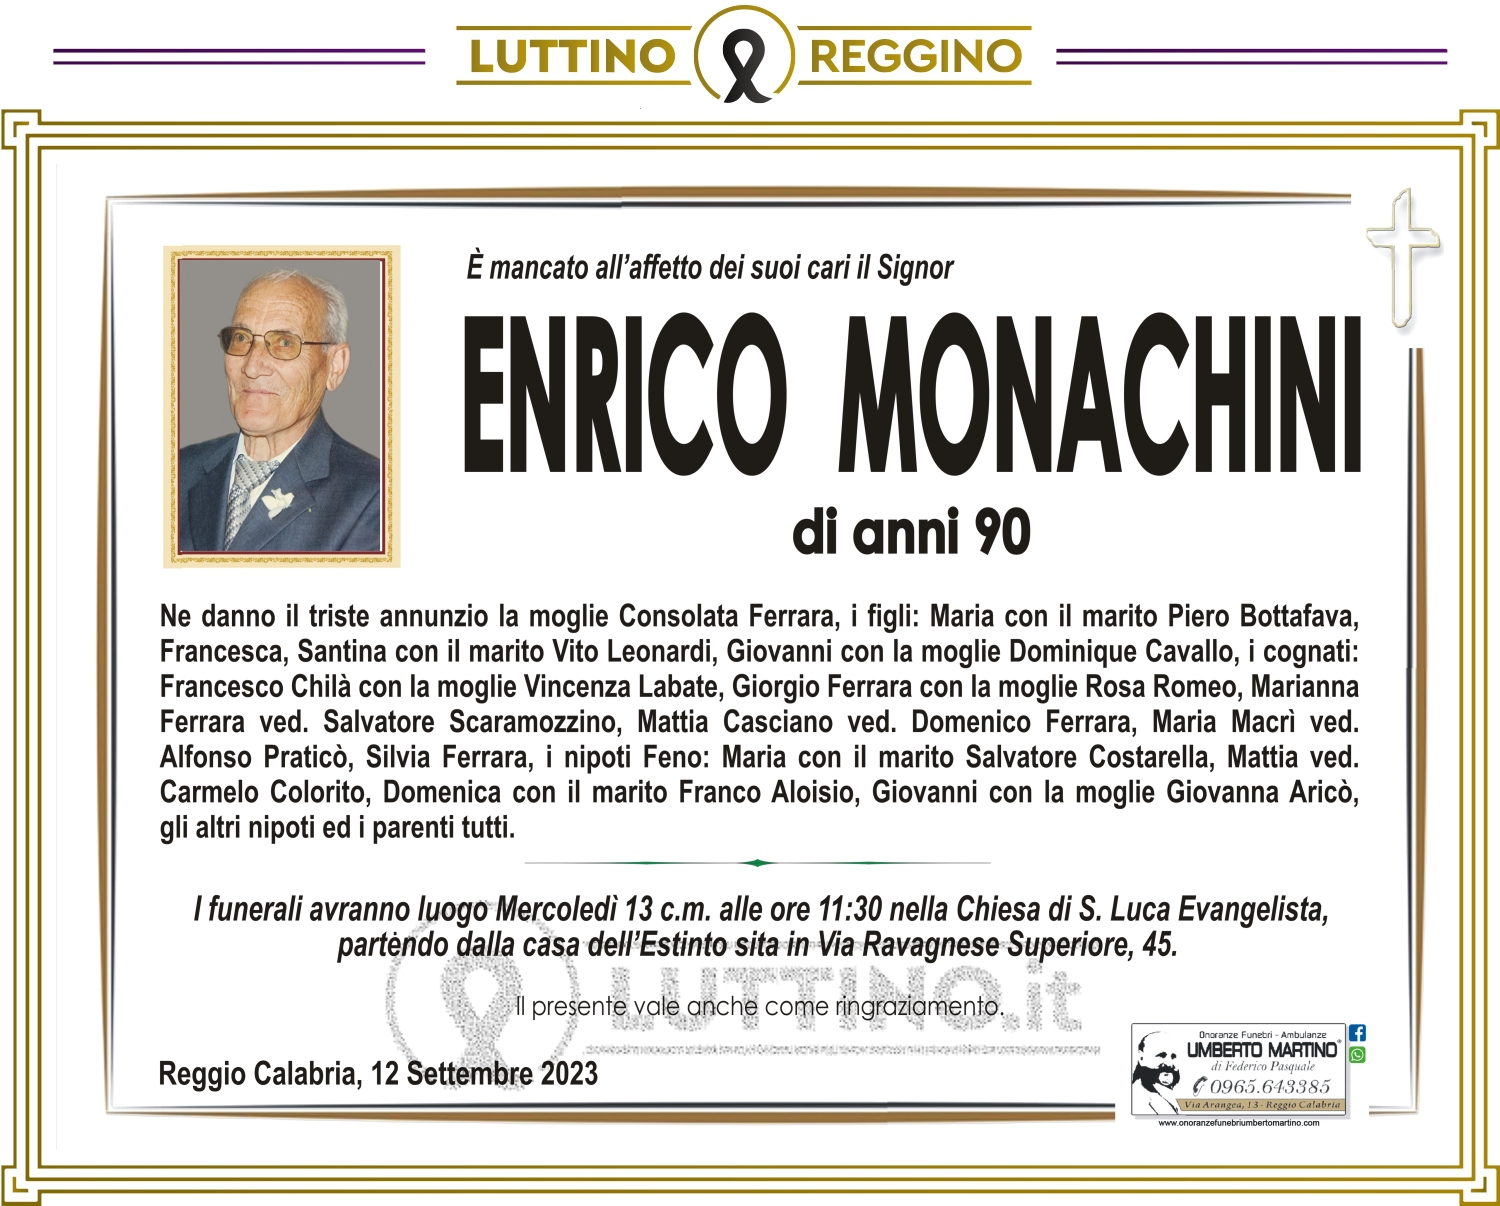 Enrico Monachini